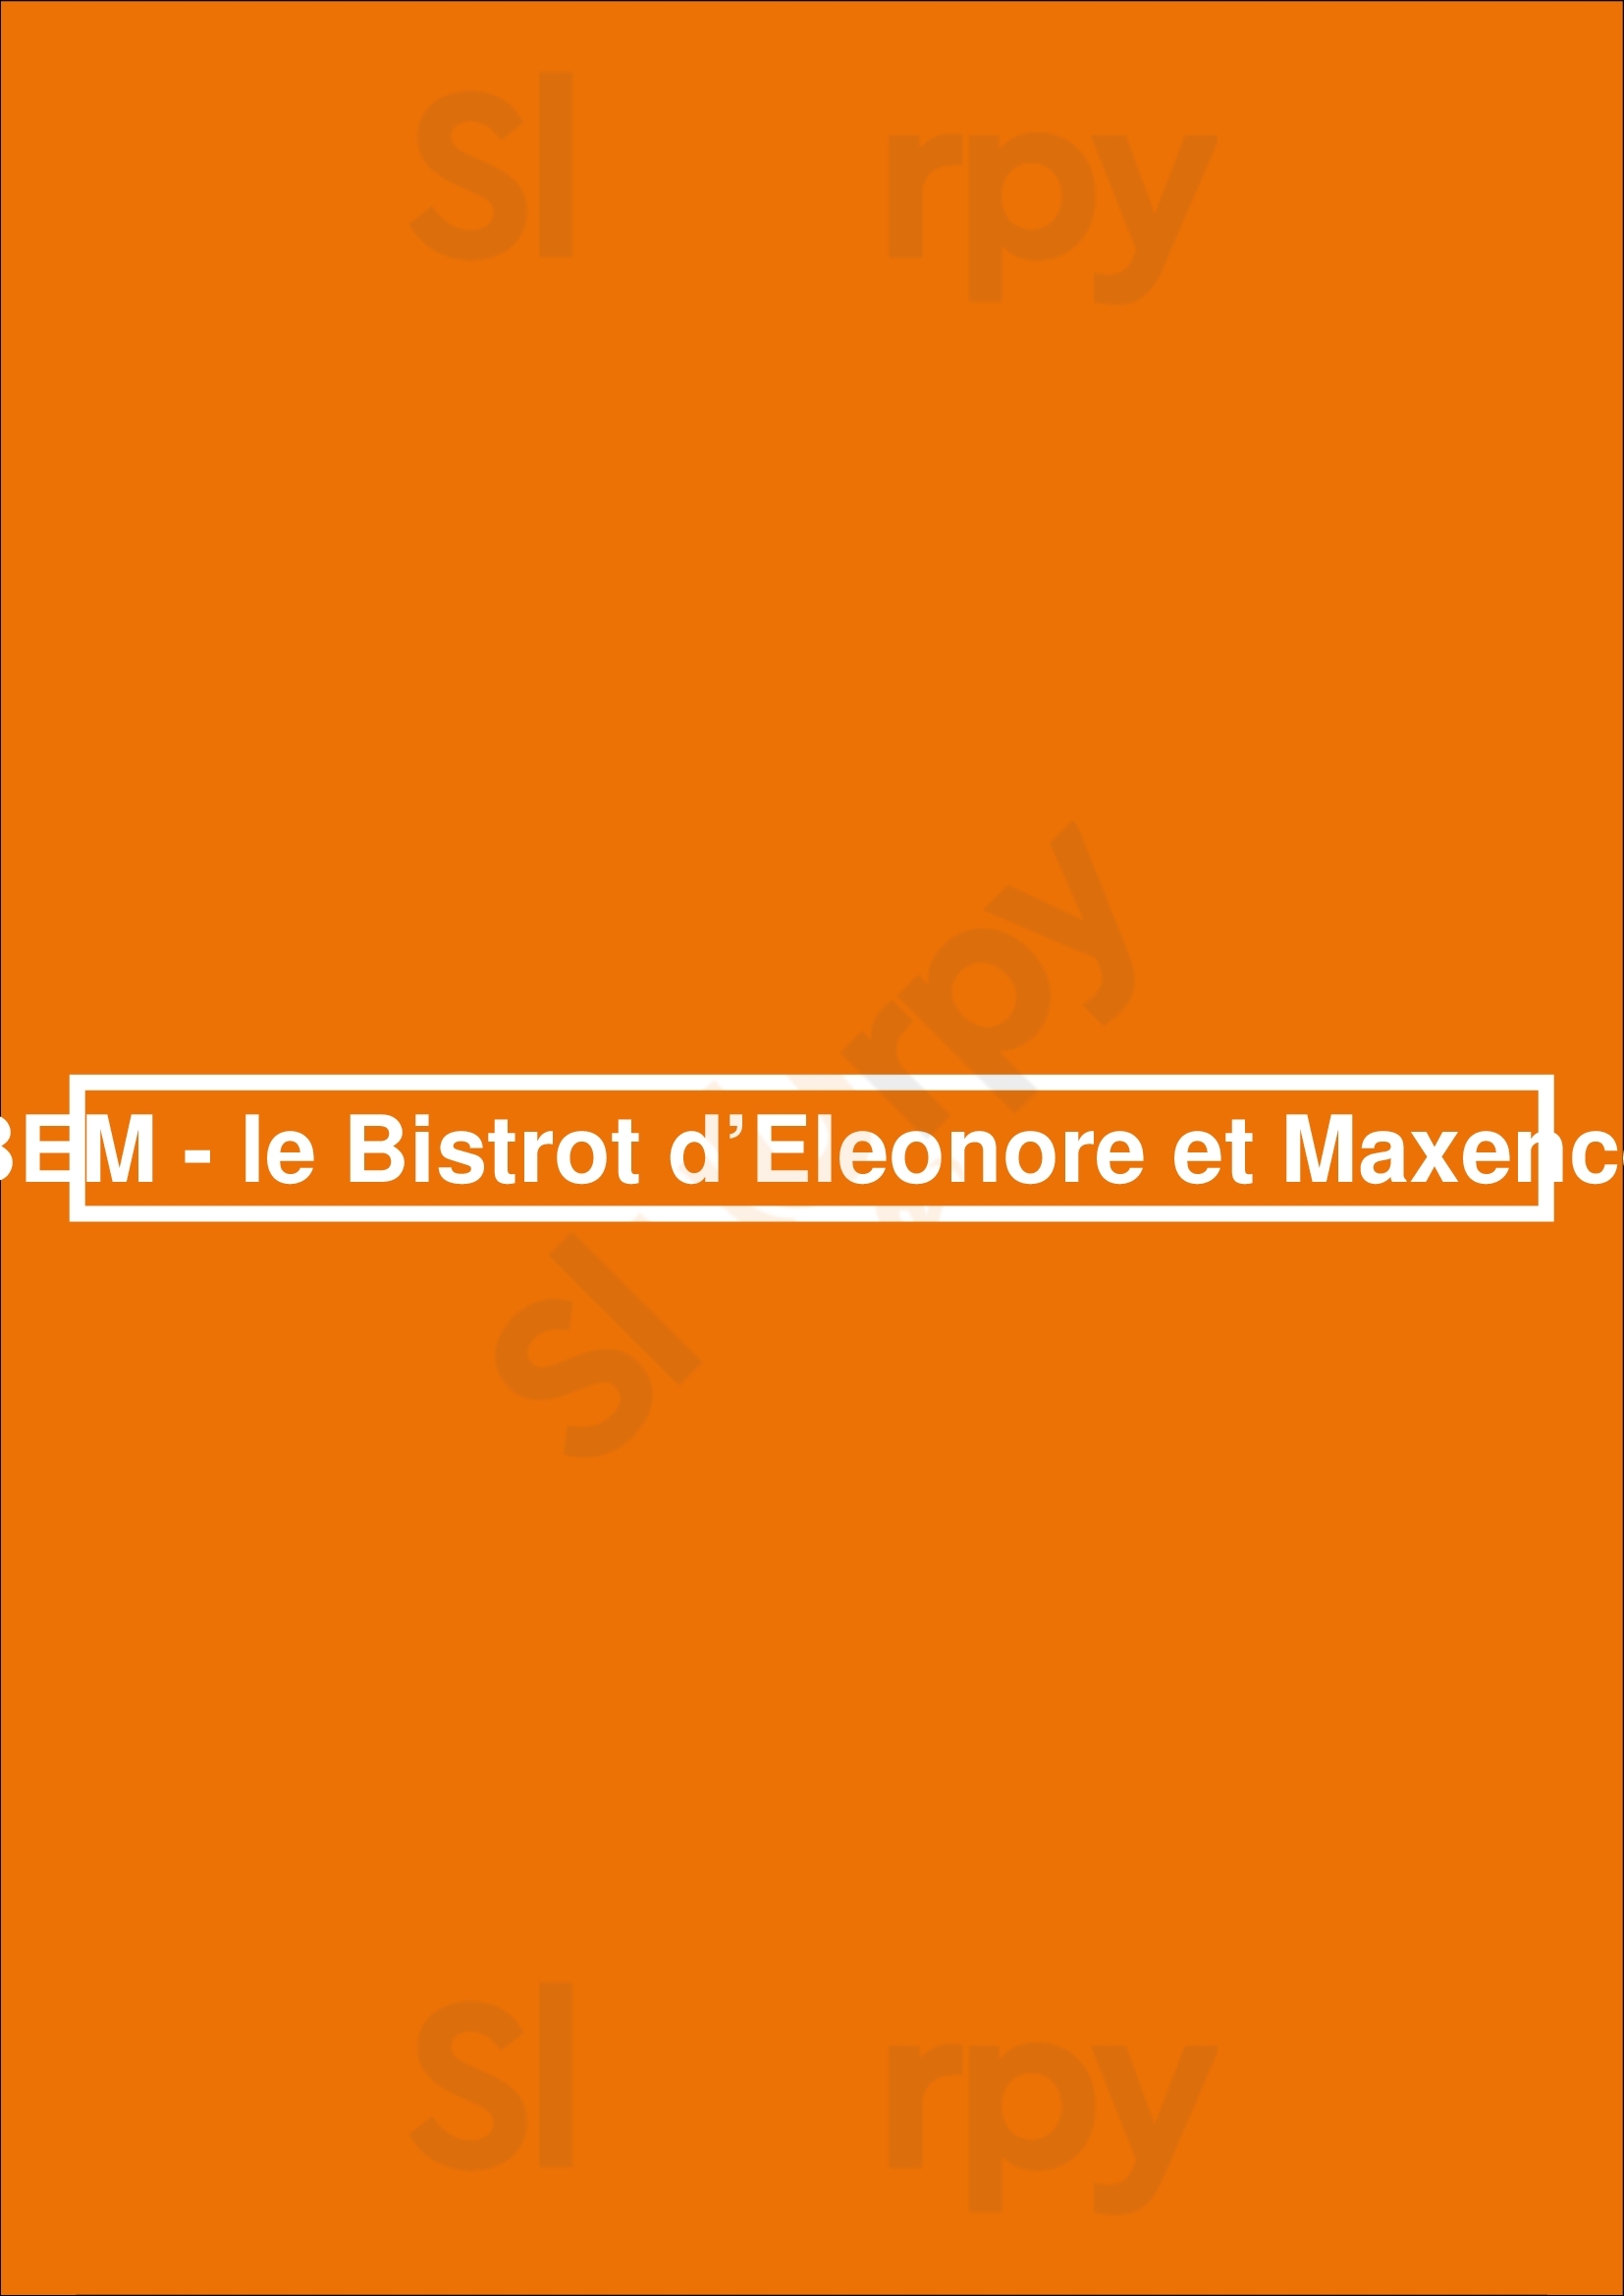 Bem - Le Bistrot D’eleonore Et Maxence Paris Menu - 1